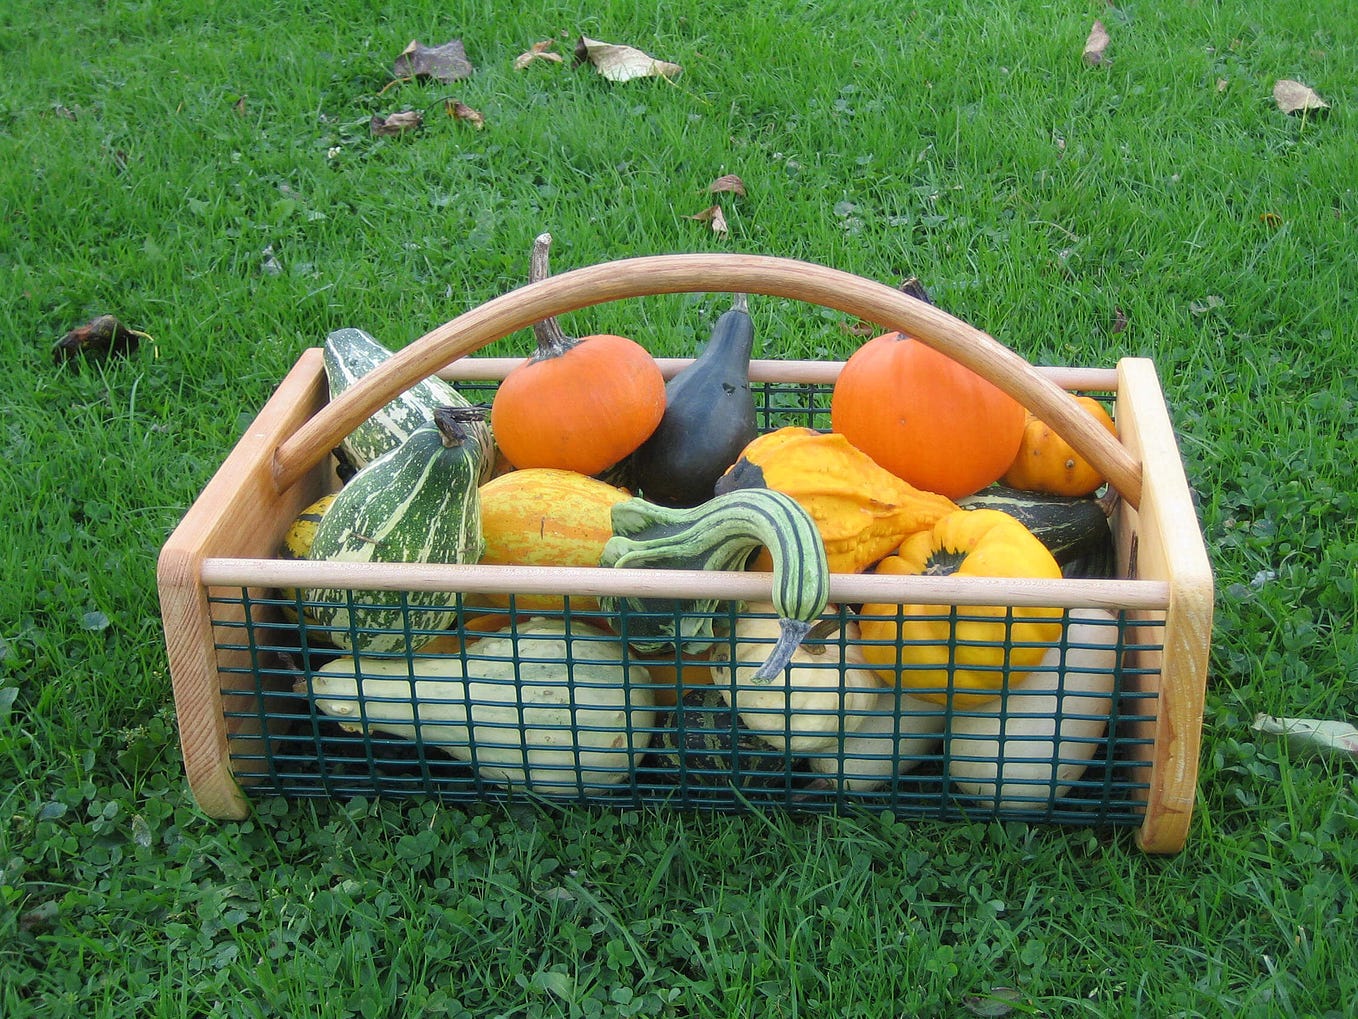 Garden Hods — Gardener’s Harvest Baskets